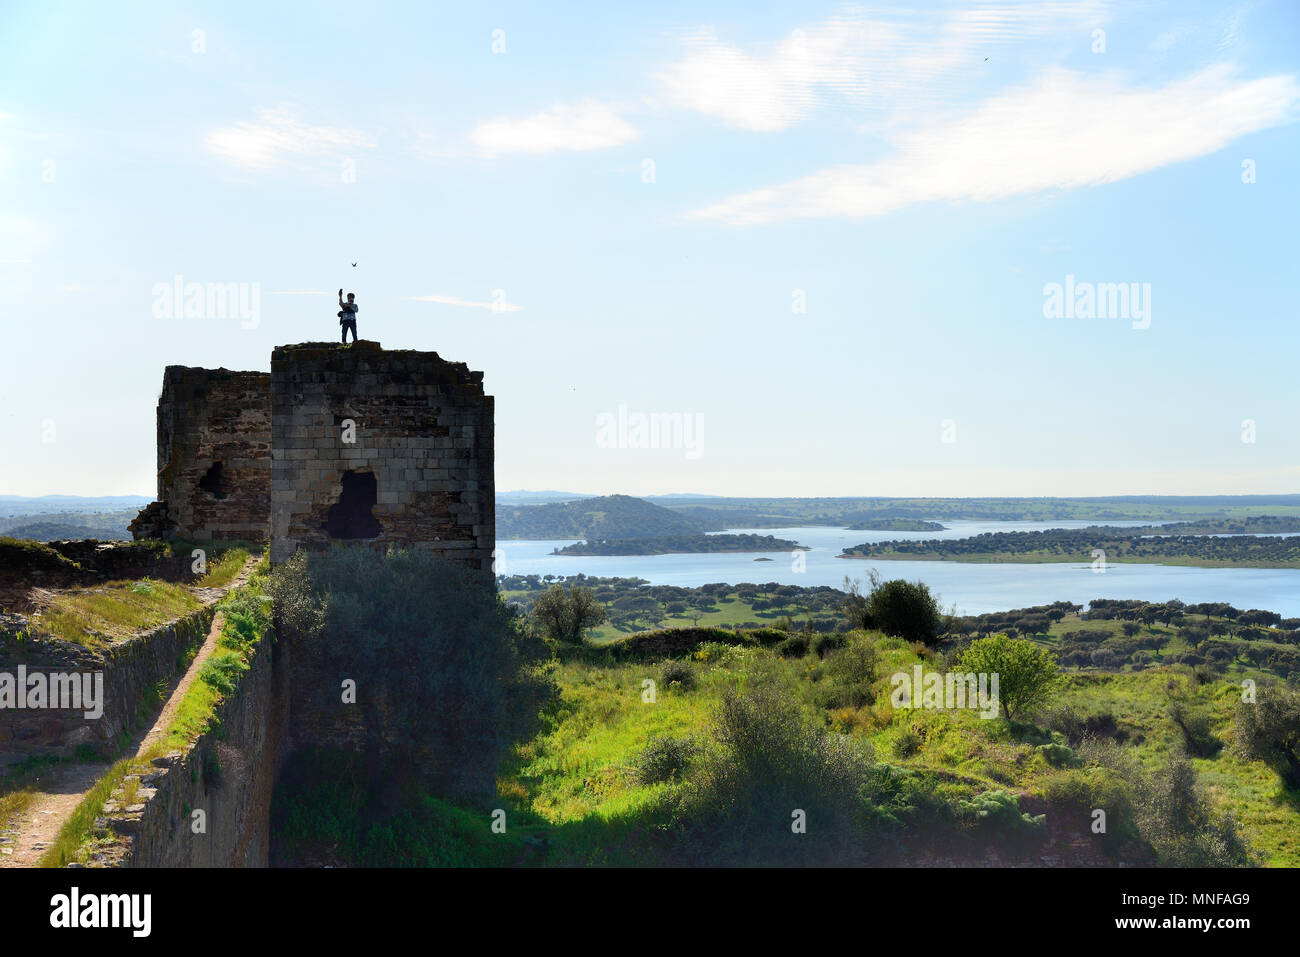 Die Burg von mourao. Im Hintergrund der Alqueva Stausee, der größte künstliche See in Westeuropa. Alentejo, Portugal Stockfoto